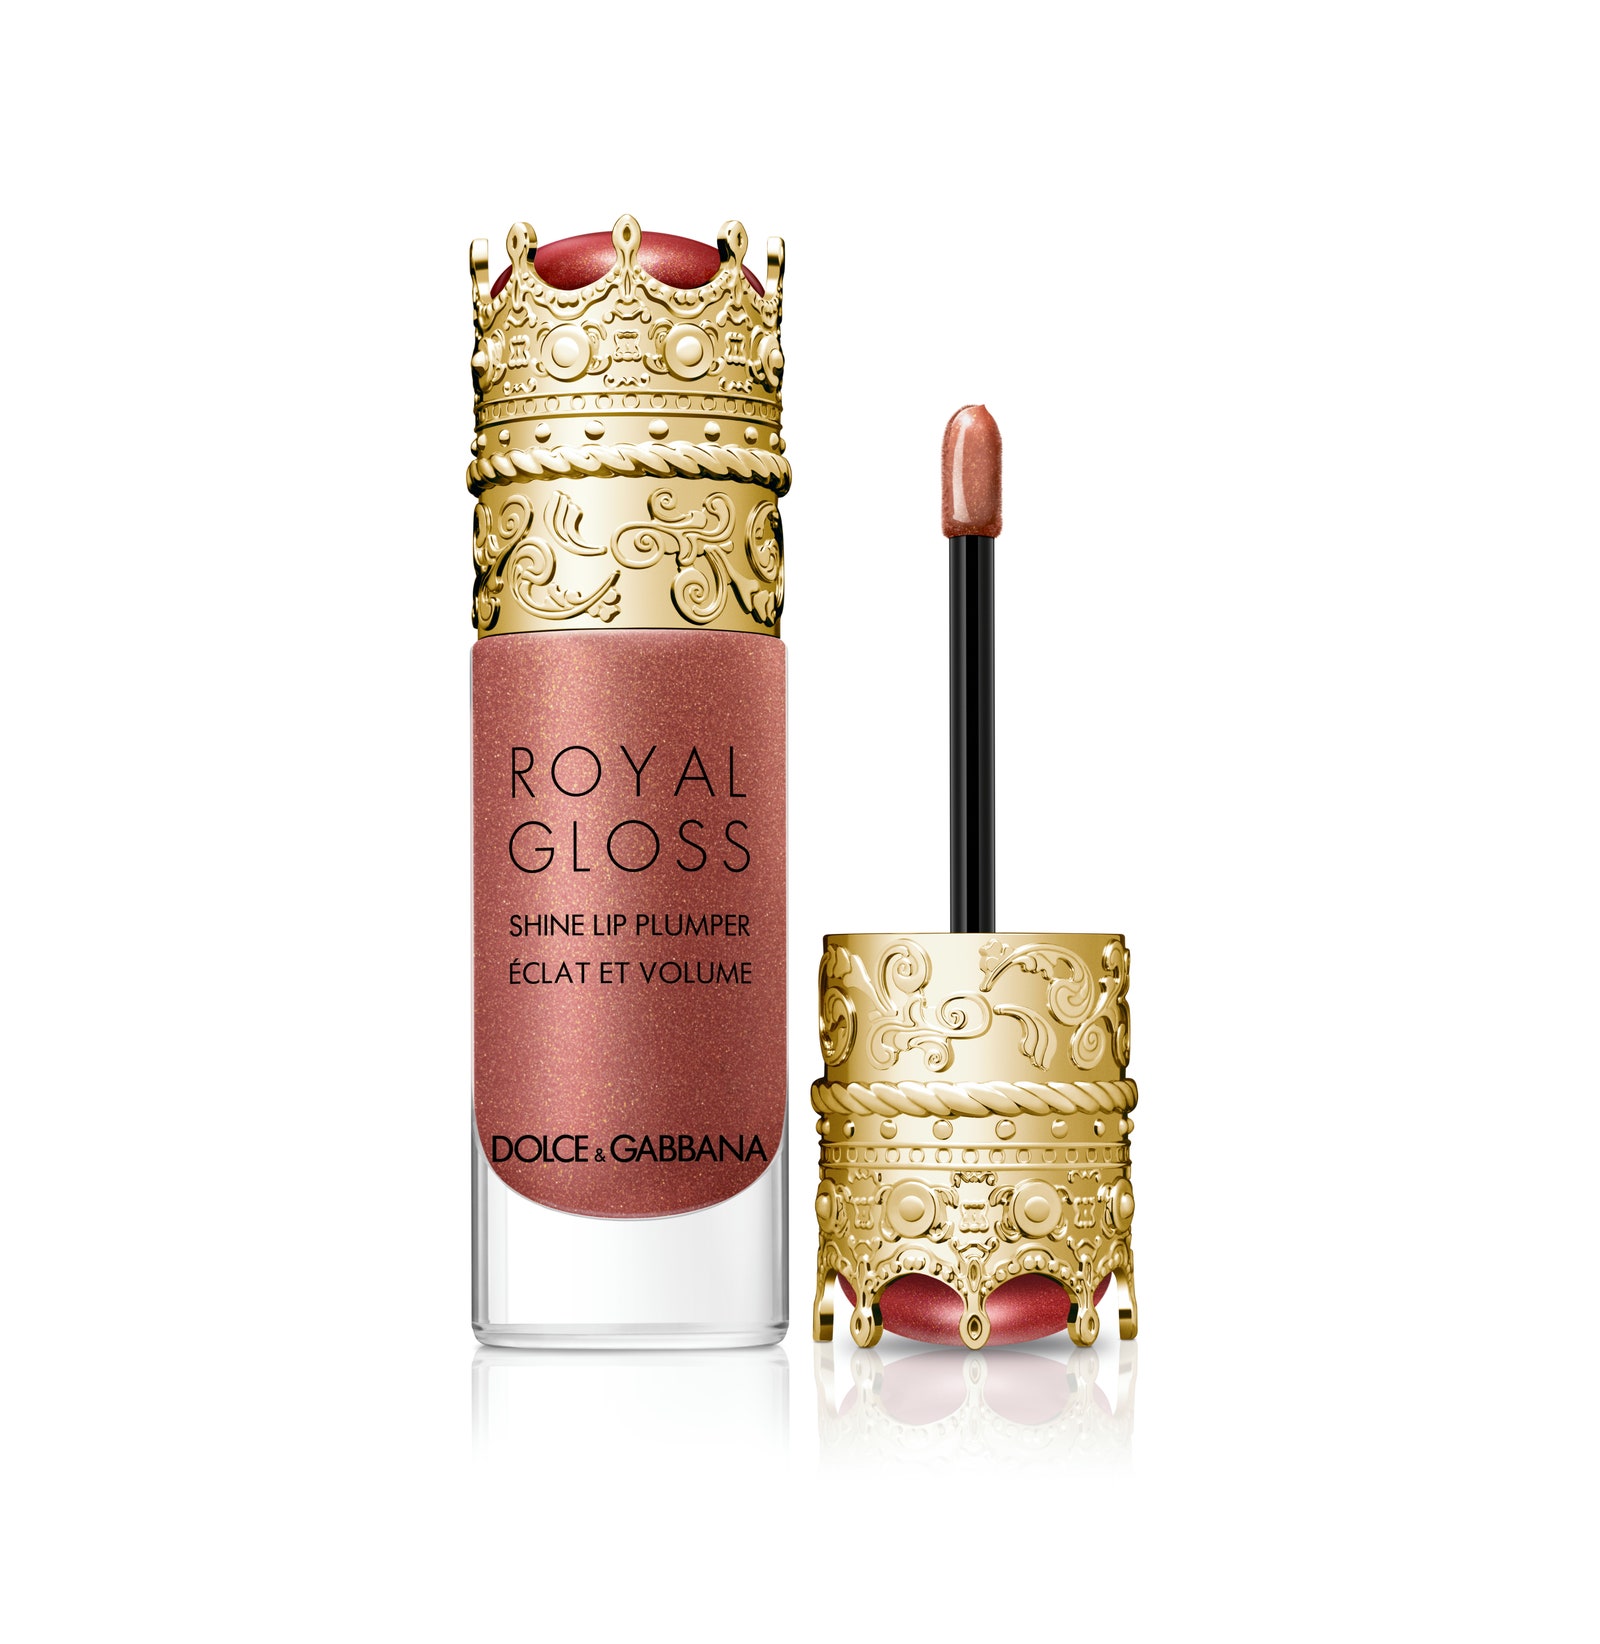 Блеск для губ с эффектом объема Royal Shadow в оттенке Divine Nude Dolce amp Gabbana Beauty 4200 рублей tsum.ru